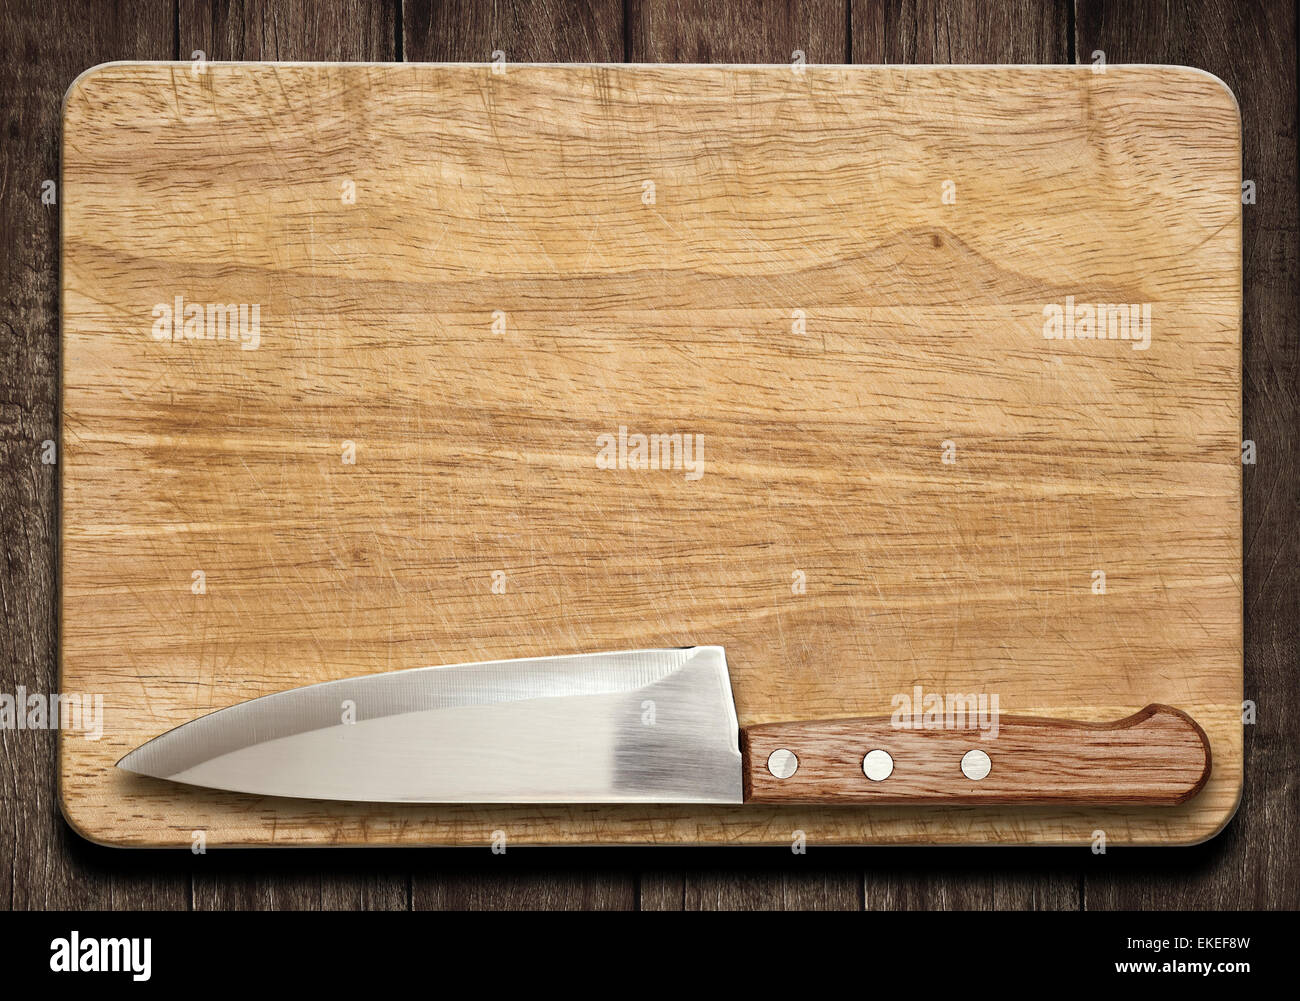 Tabla de cortar y el cuchillo sobre la tabla de madera vieja Foto de stock